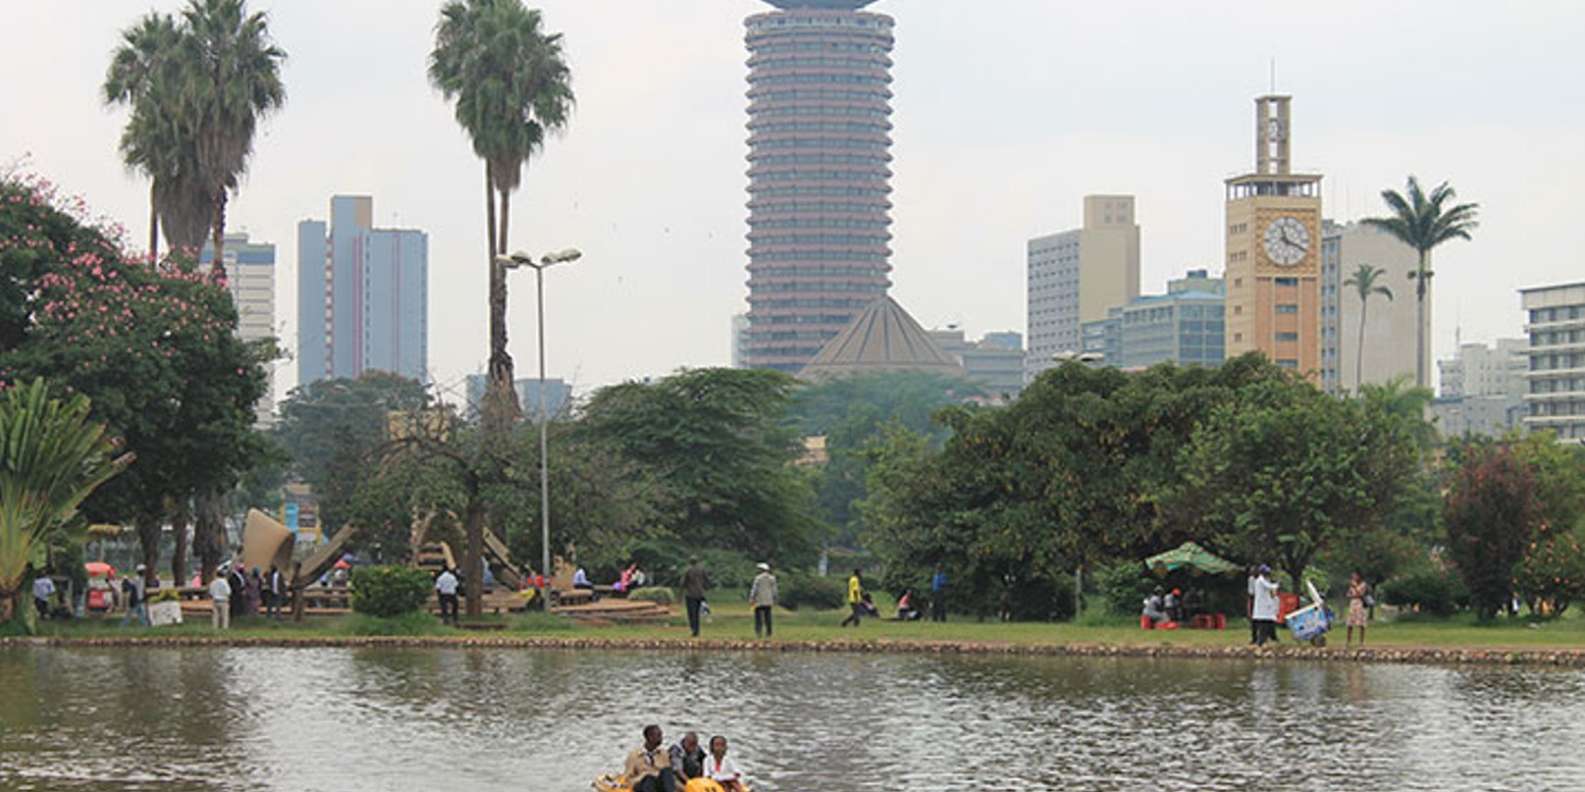 things to do in Nairobi